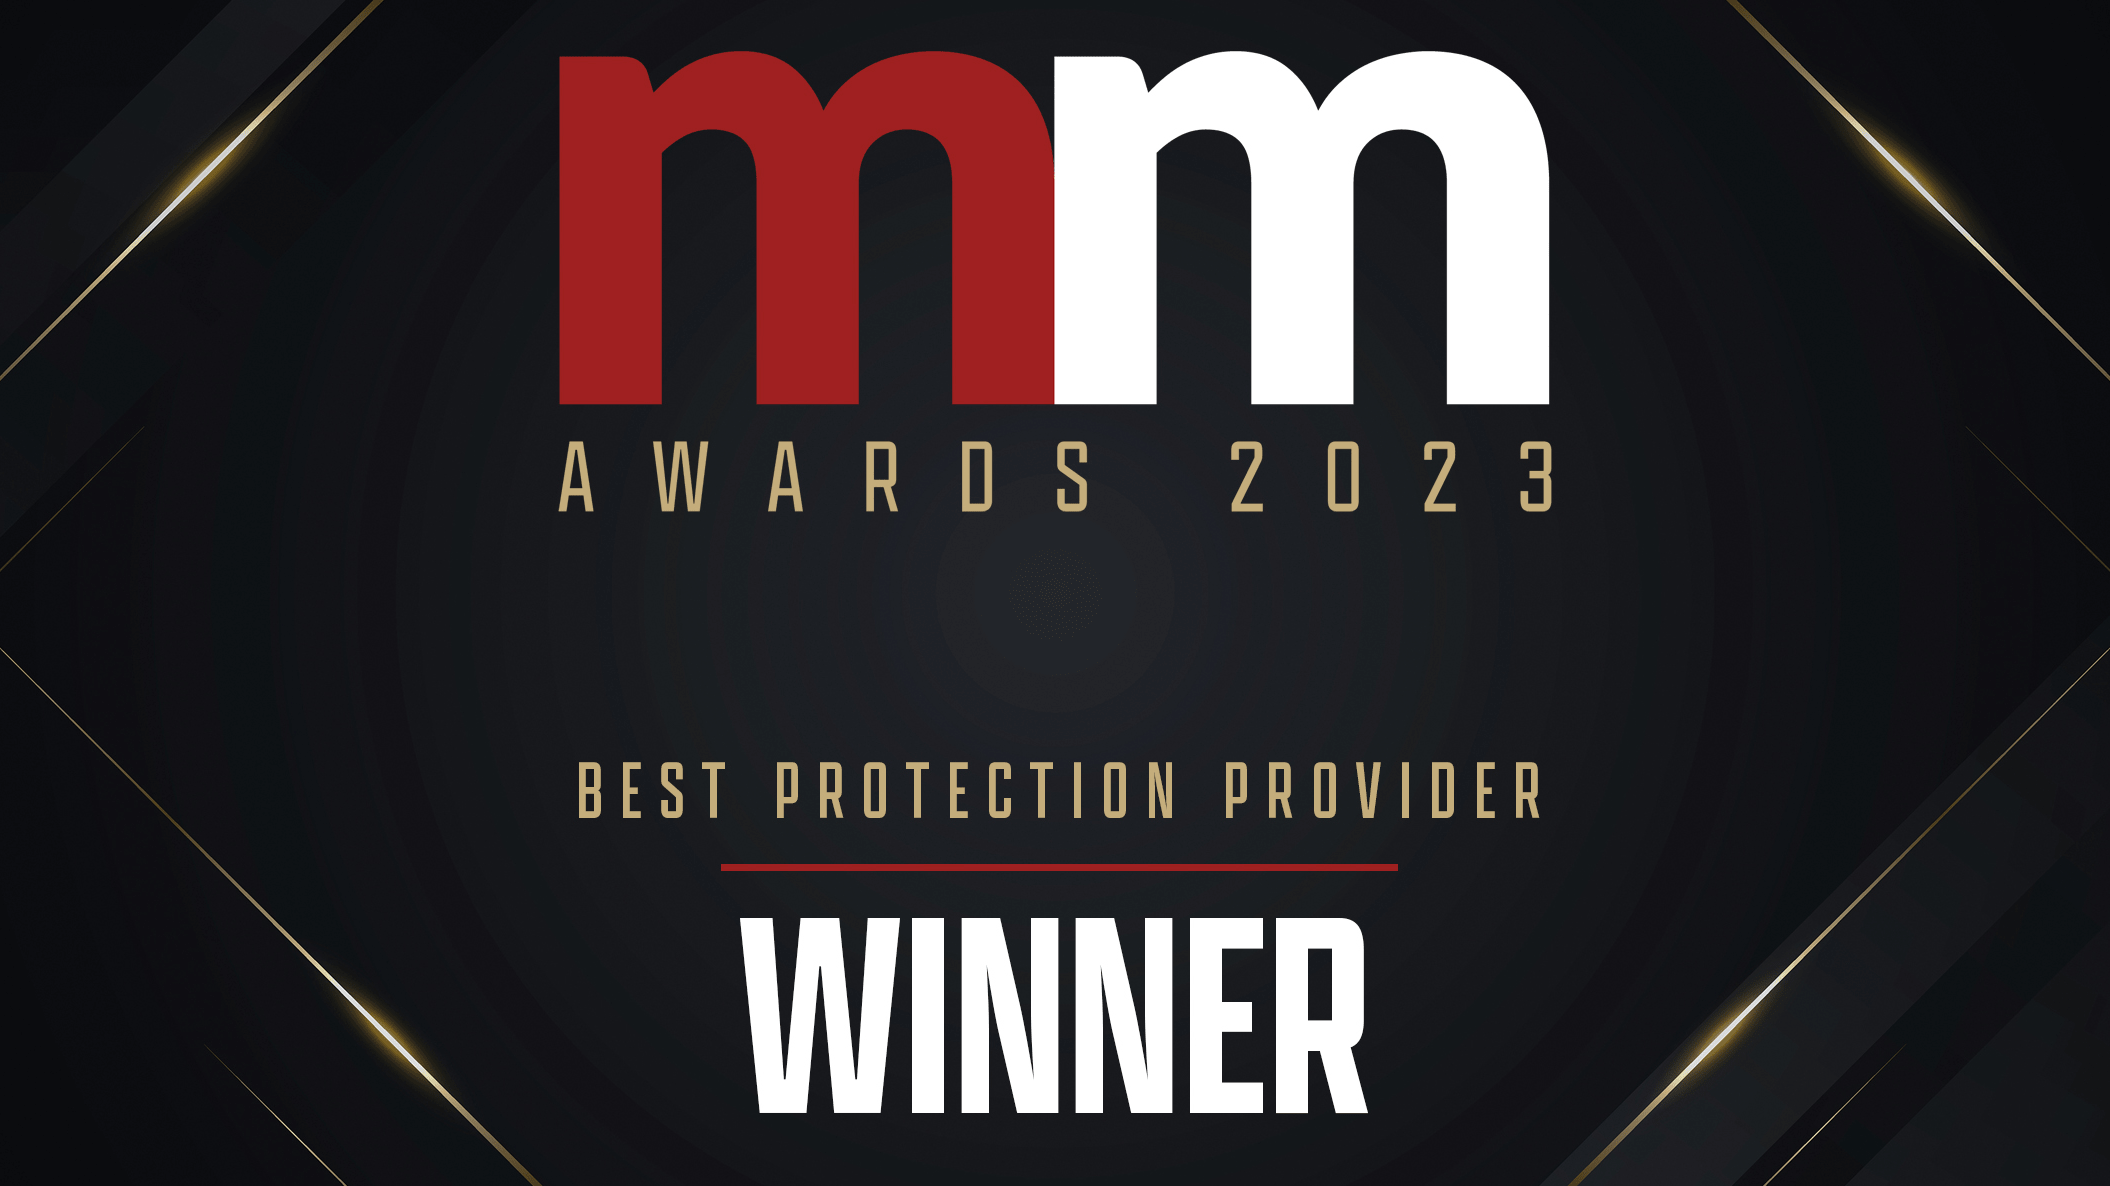 MM awards 2023 - Best protection provider - Winner